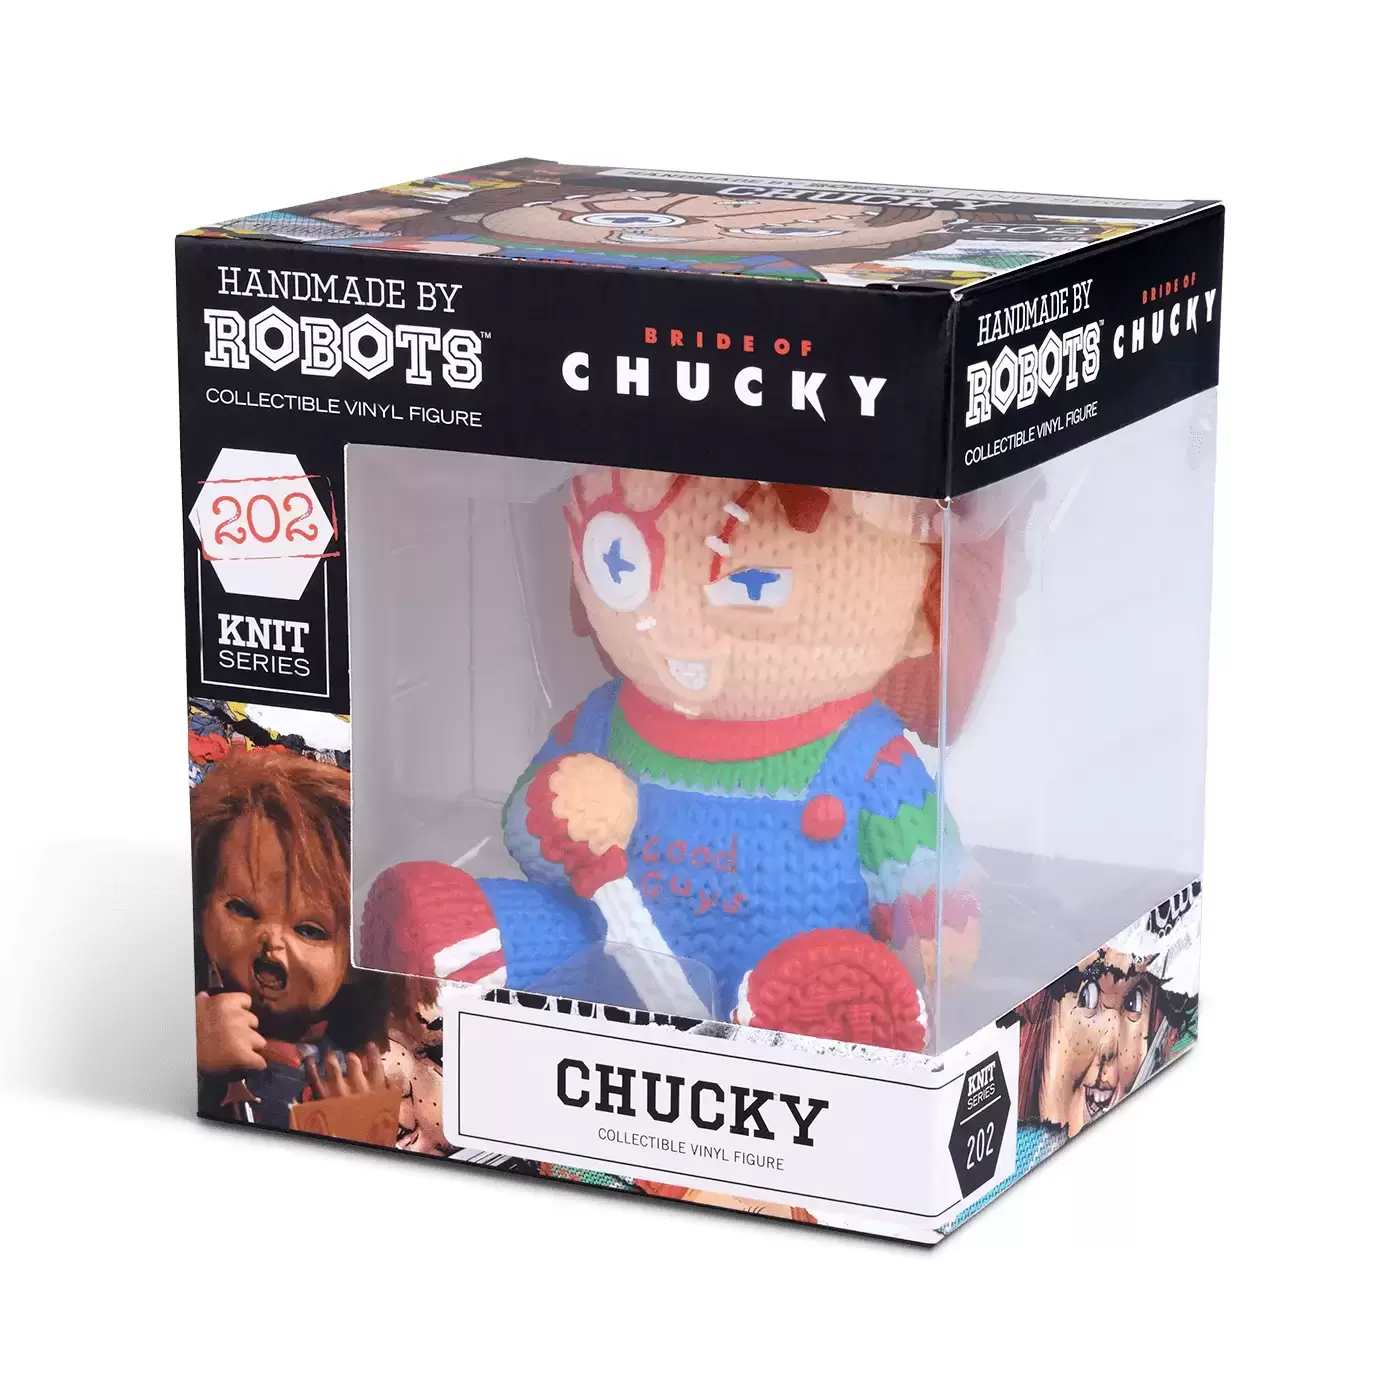 Handmade By Robots - Bride of Chucky - Chucky